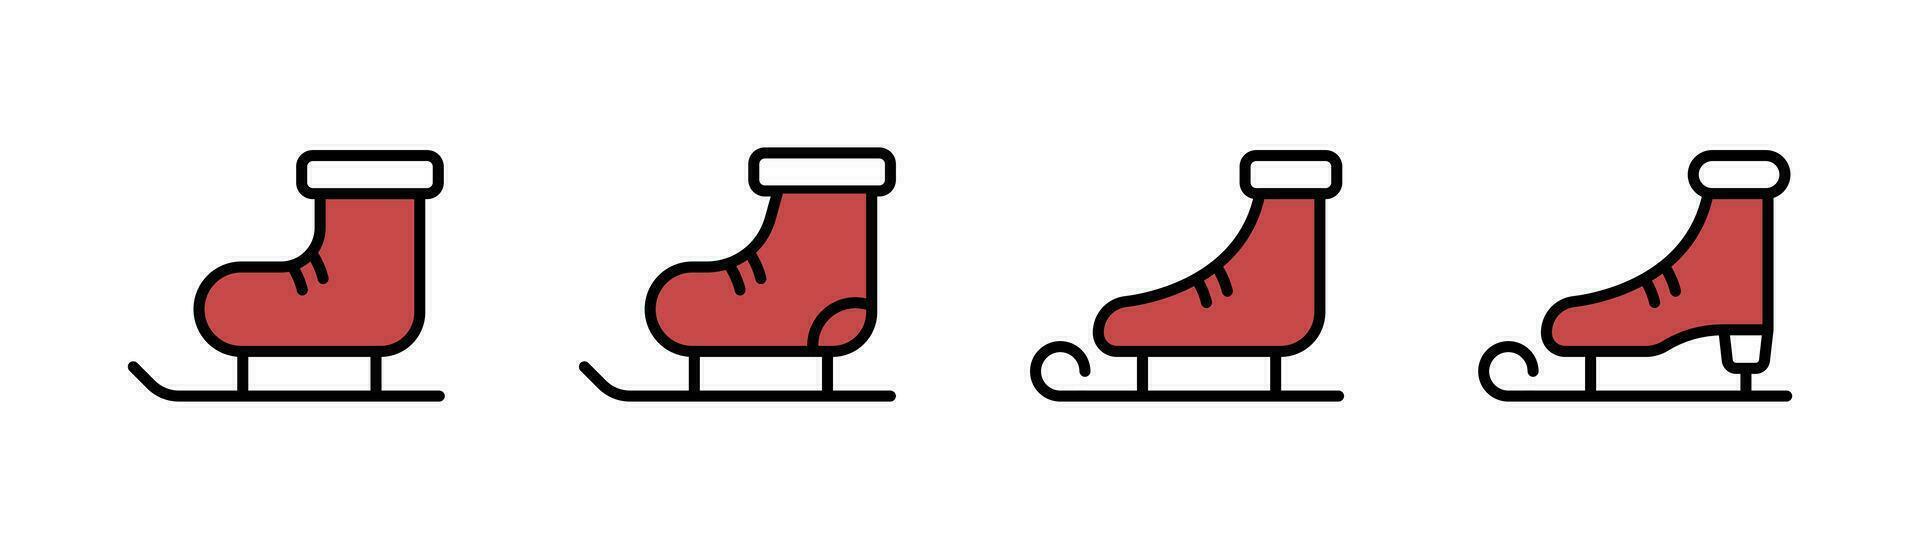 rouge la glace patin plat icône. hiver la glace patinage icône ensemble. figure patinage illustration. le hockey démarrage signe. la glace patin plat icône. Stock vecteur illustration.